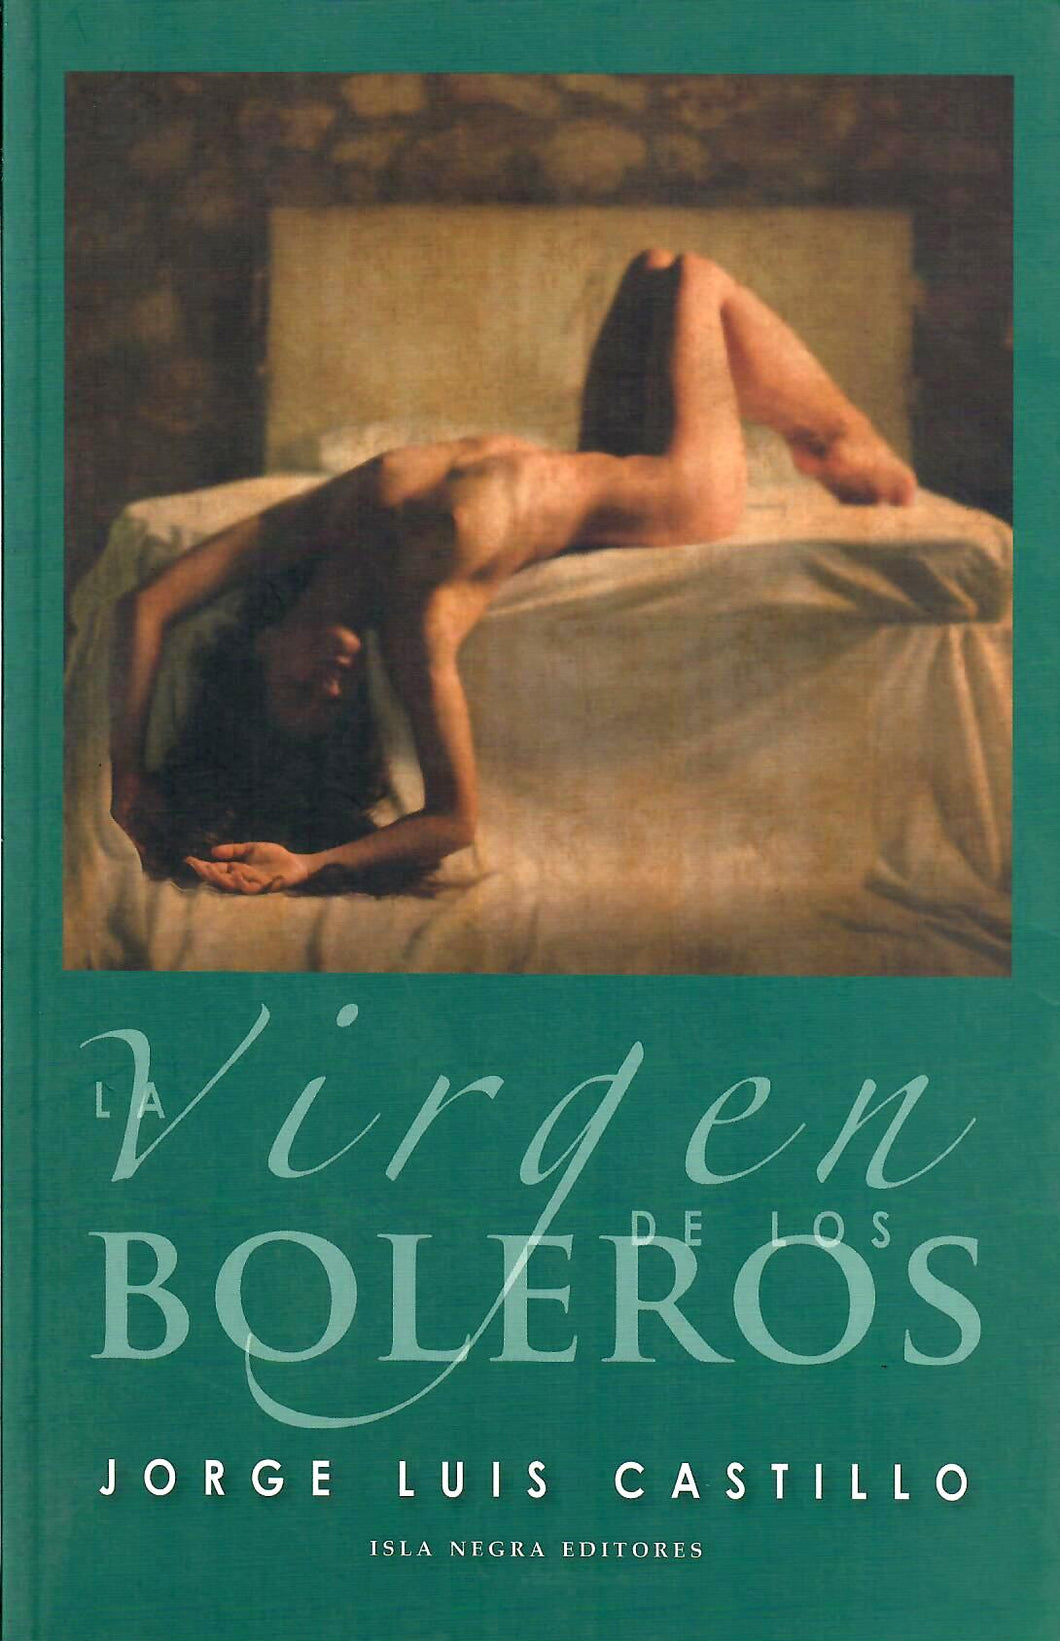 LA VIRGEN DE LOS BOLEROS - Jorge Luis Castillo